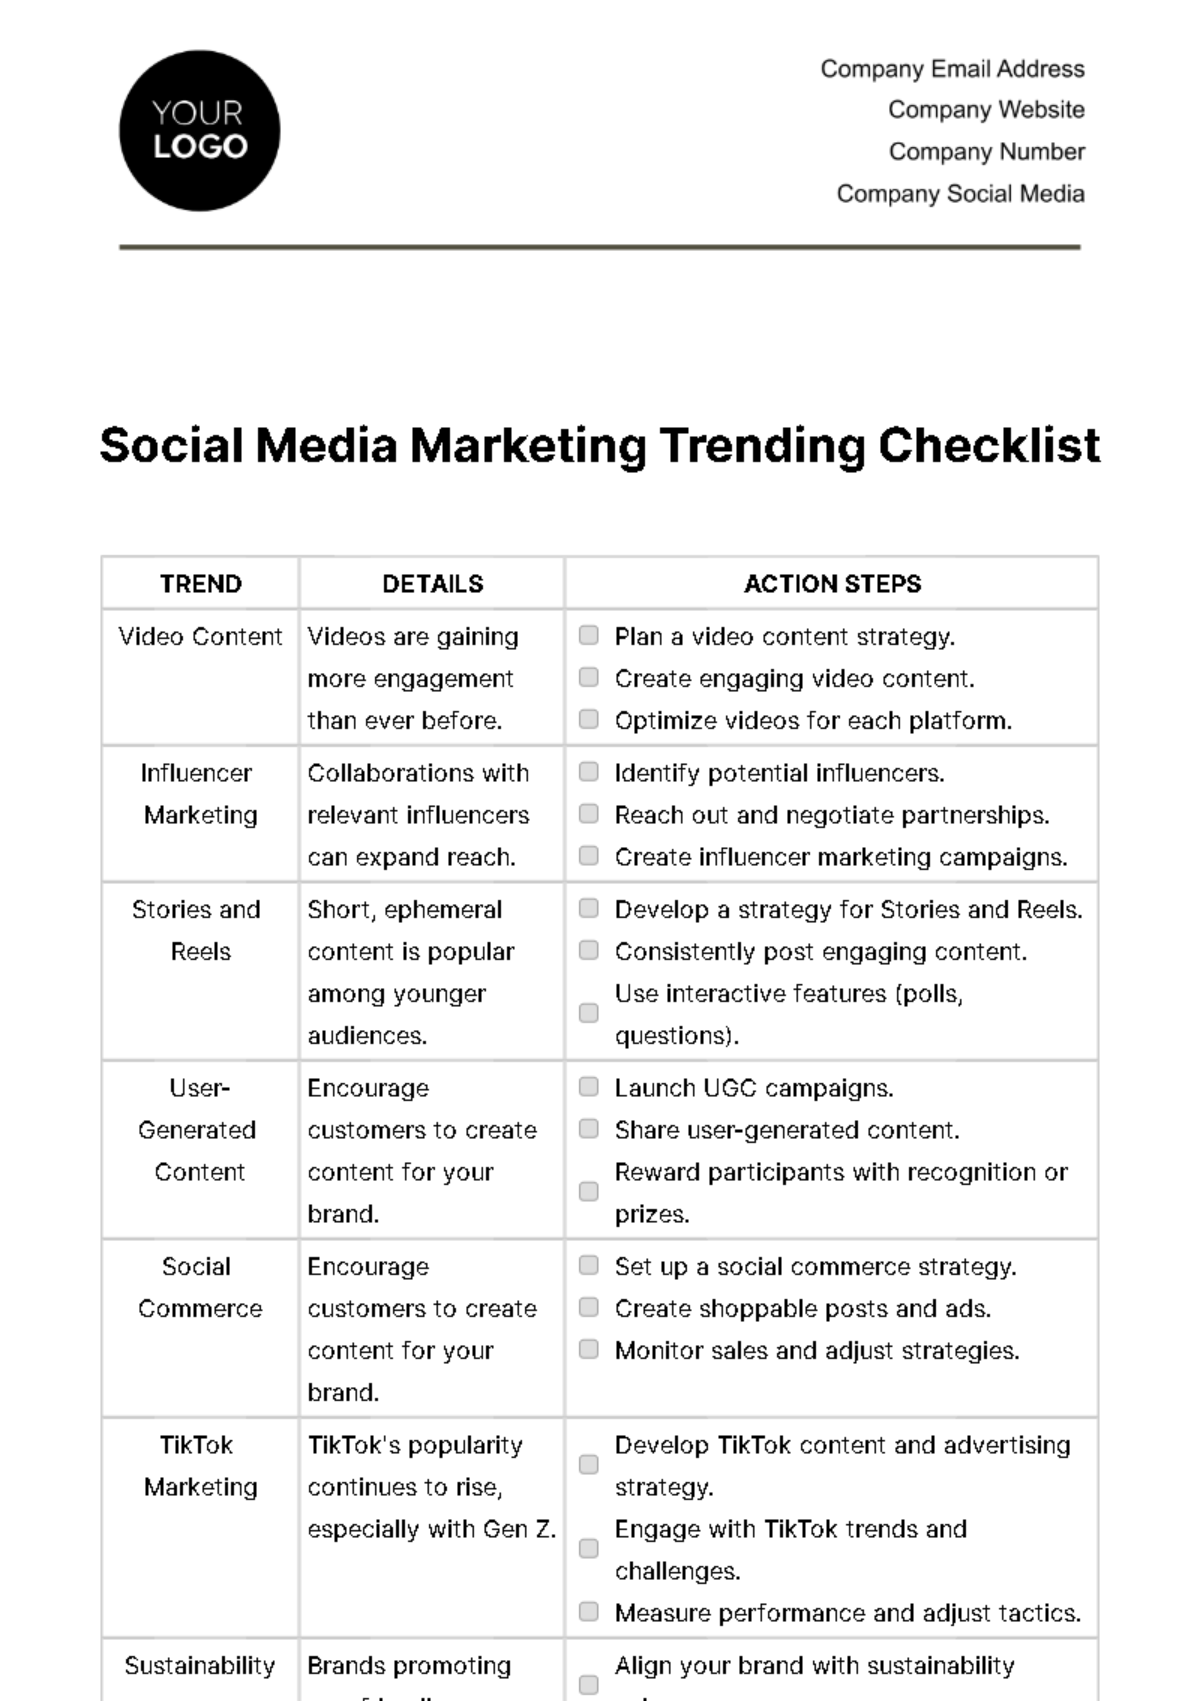 Social Media Marketing Trending Checklist Template